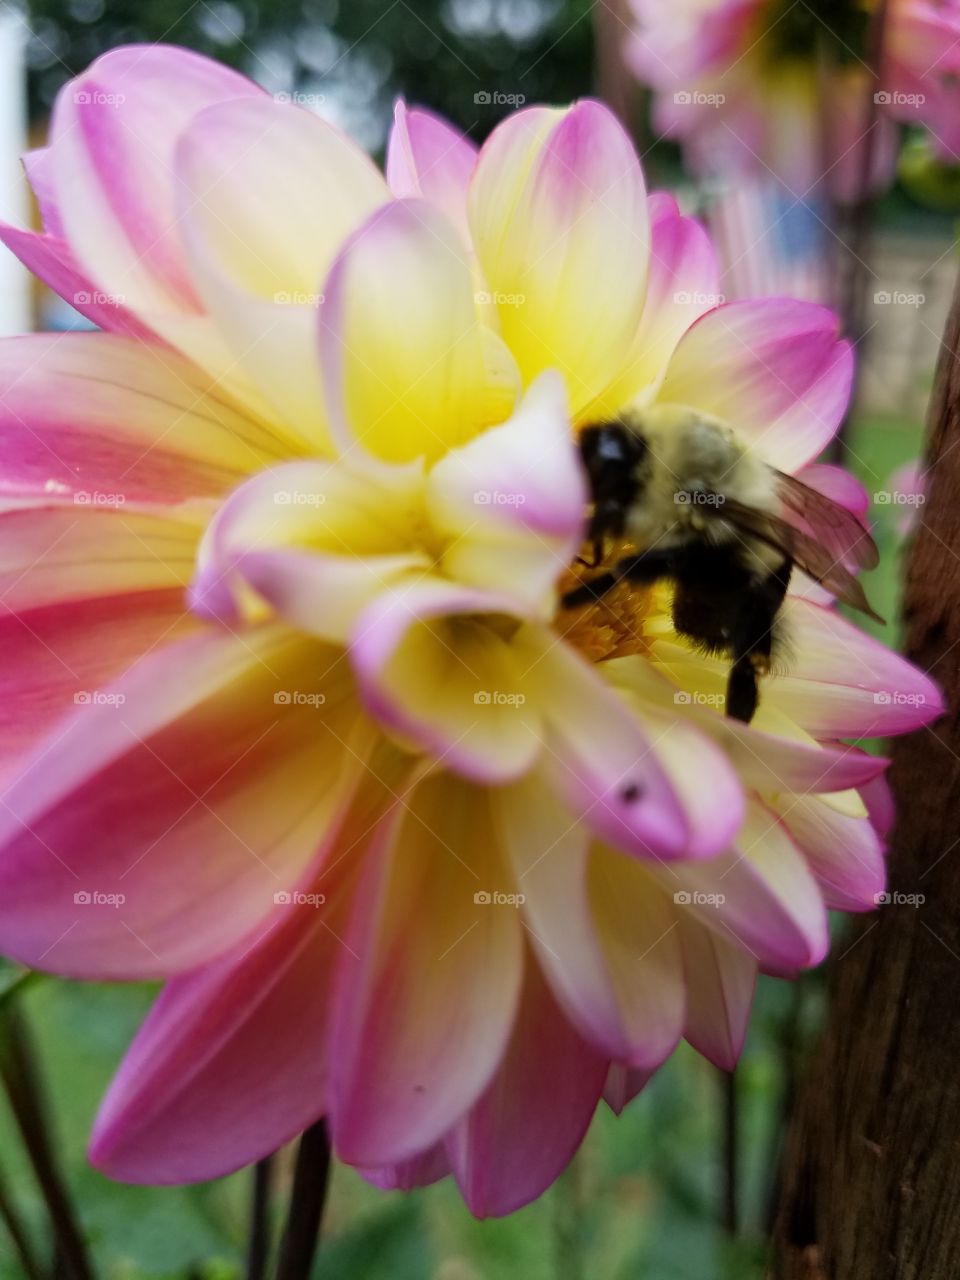 bumblebee in flight